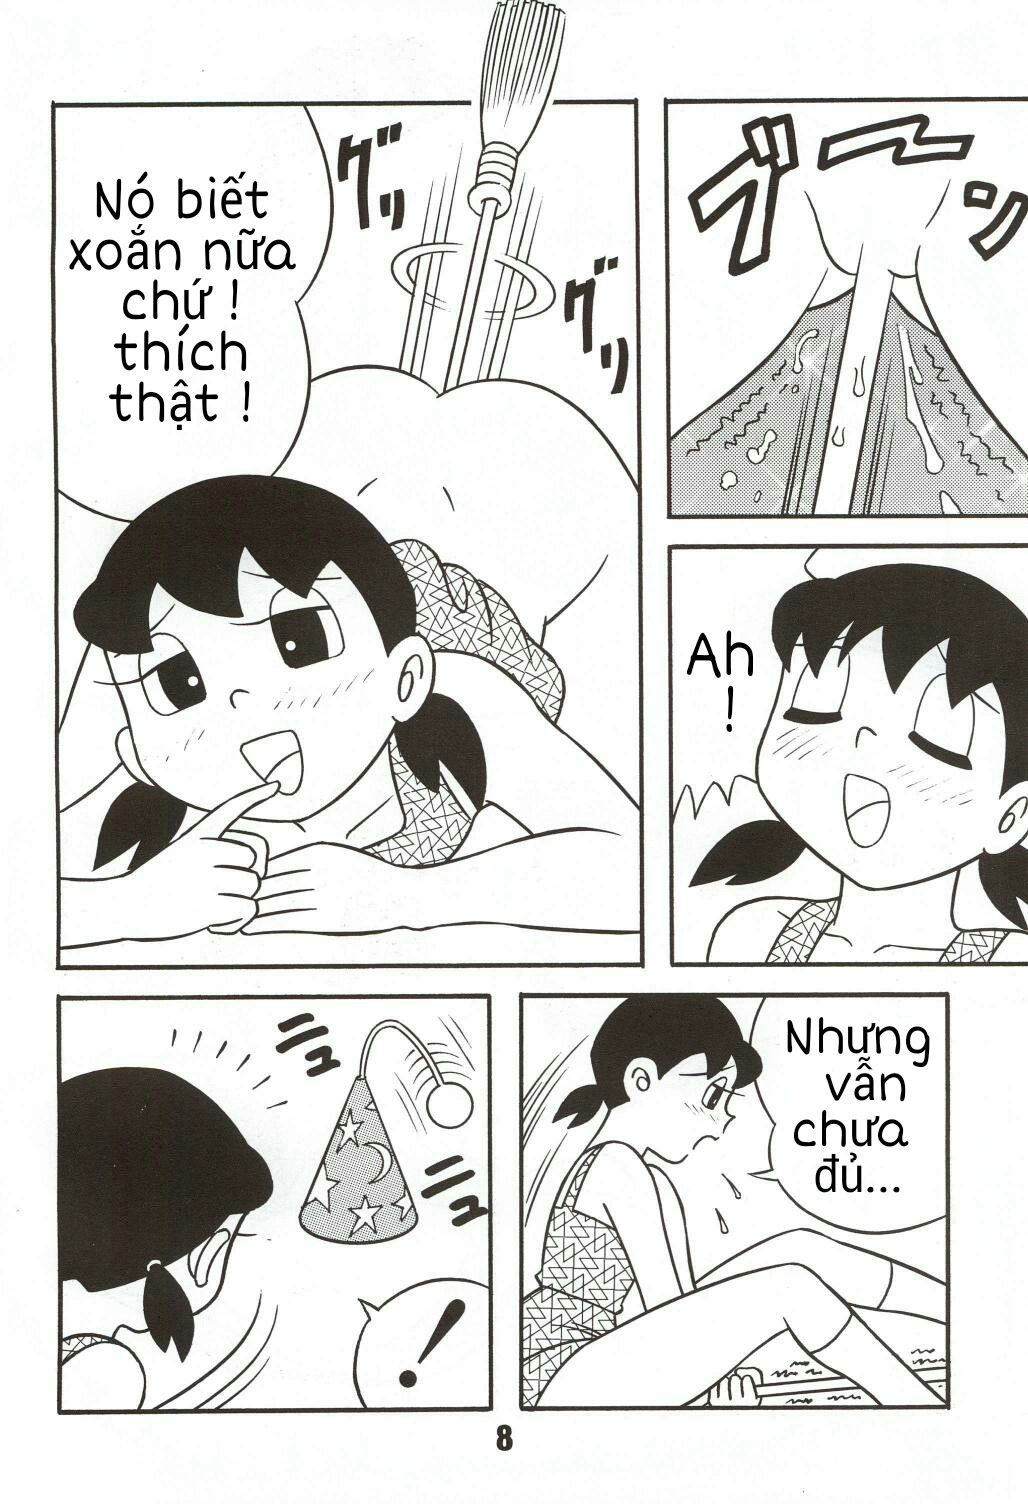 Tuyển Tập Doraemon Doujinshi 18+  Chapter 4- Xuka cô phù thủy nhỏ - Trang 6